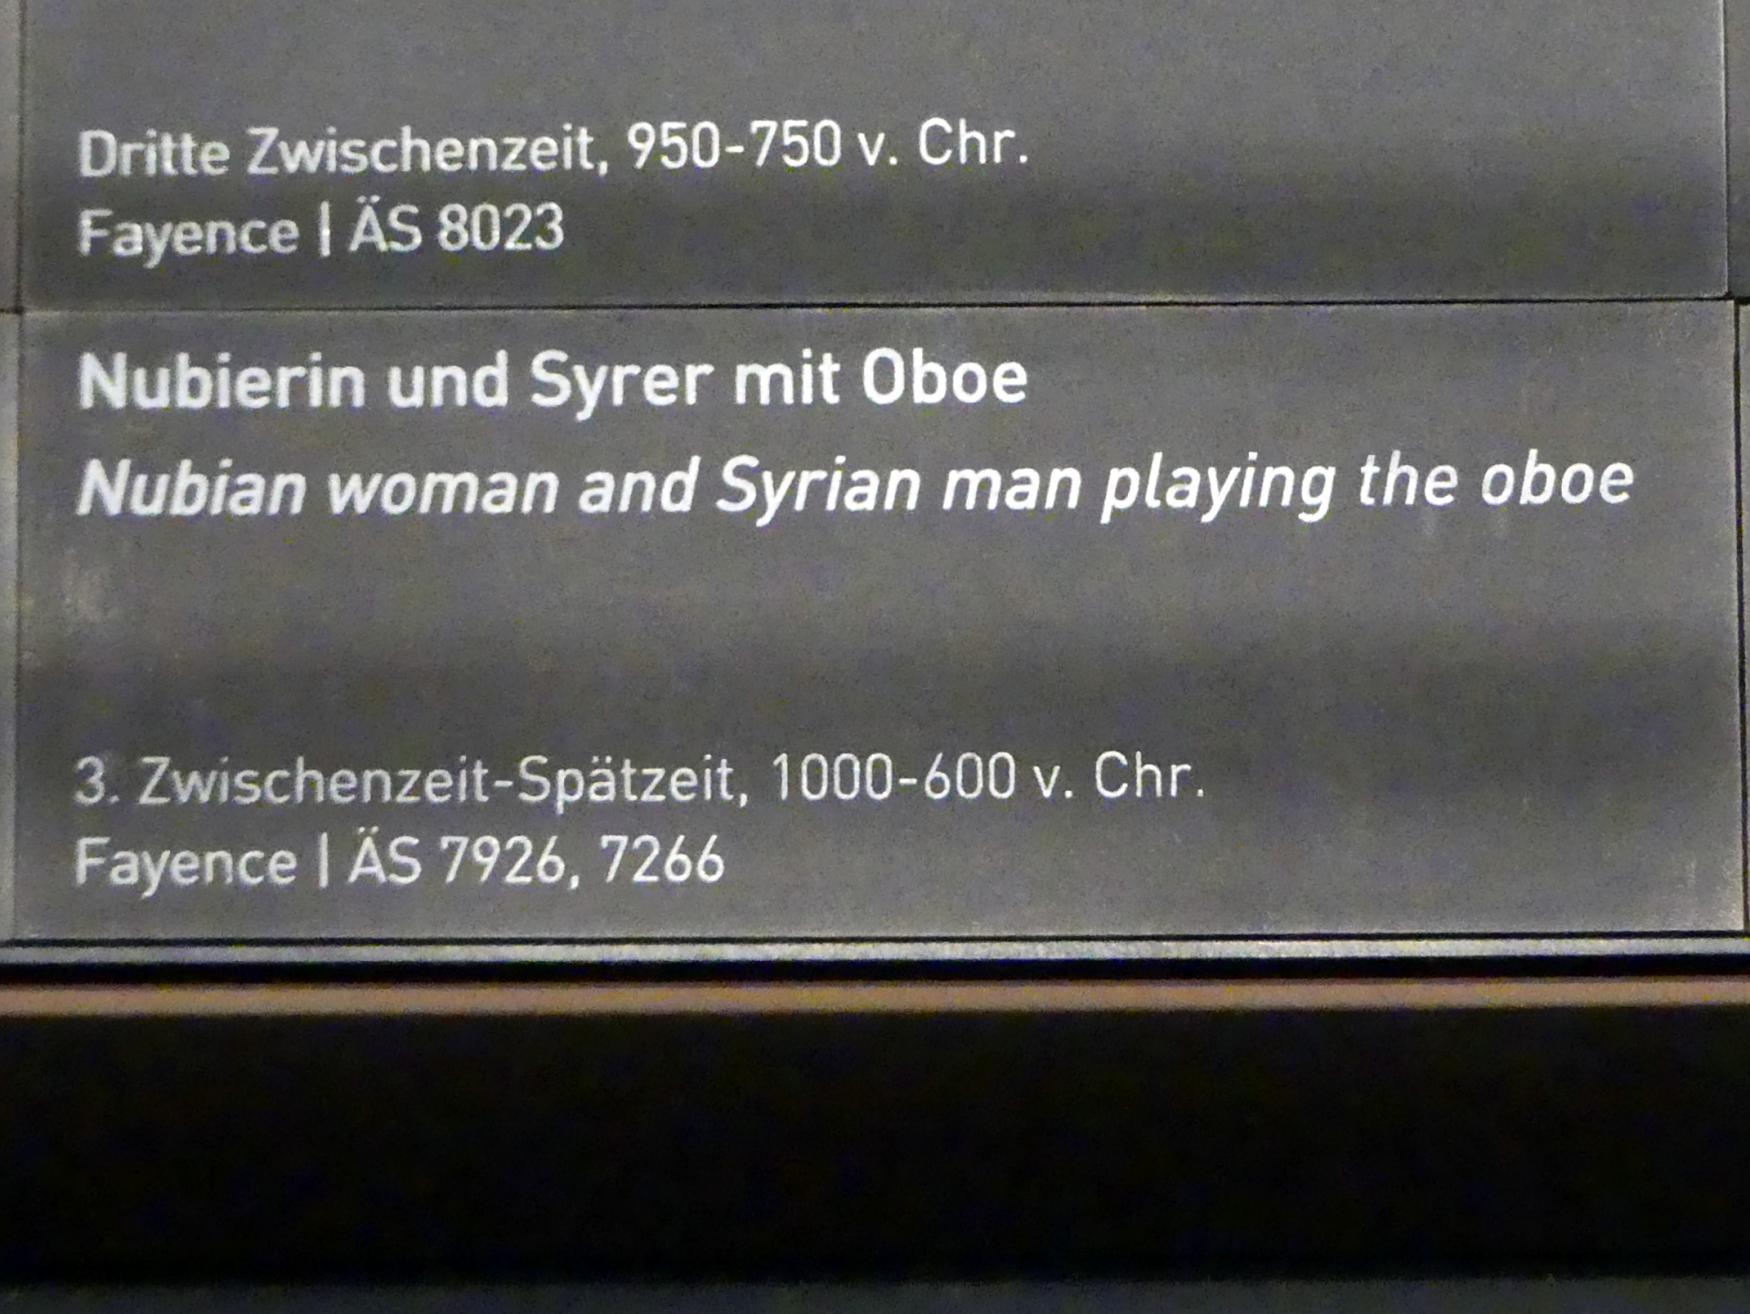 Syrer mit Oboe, 1000 - 600 v. Chr., Bild 2/2